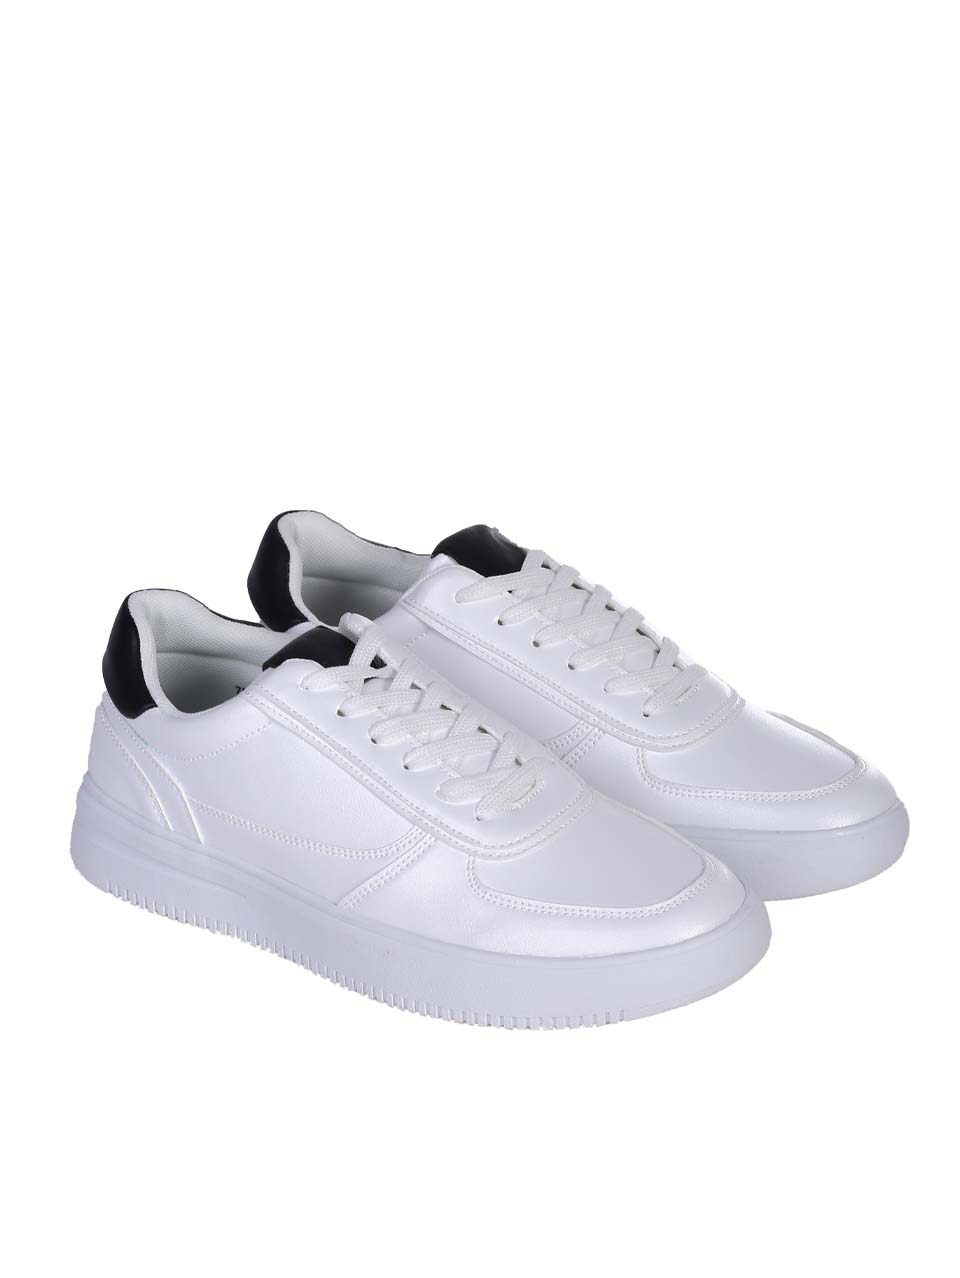 Ежедневни мъжки комфортни обувки в бяло 7H-24192 white